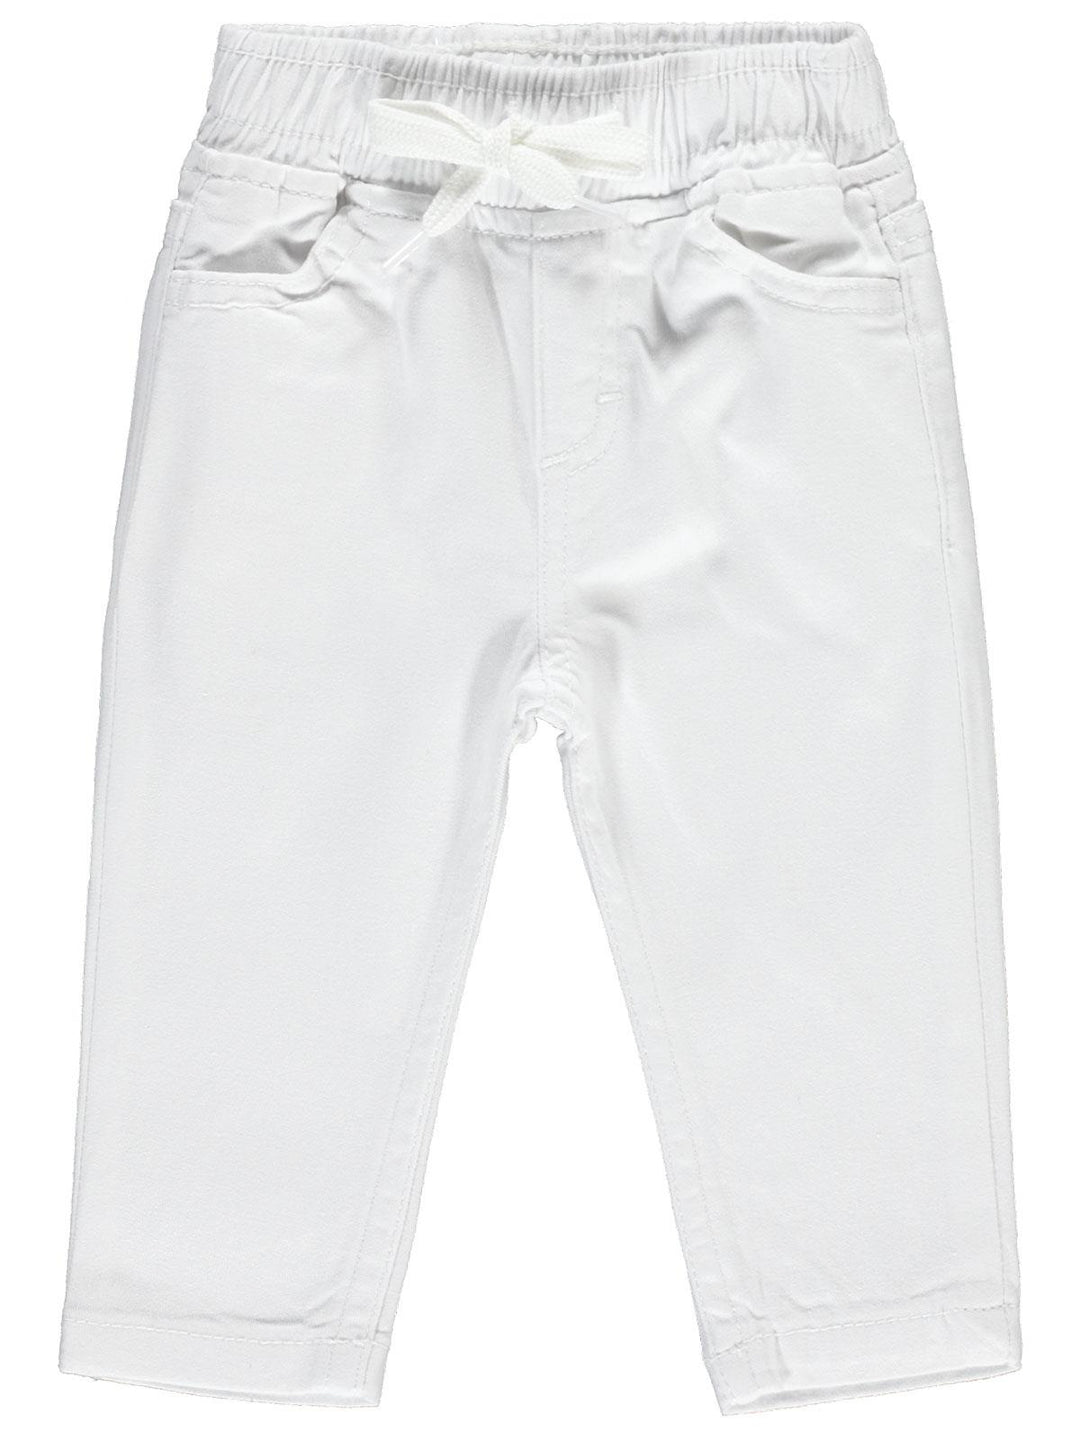 Civil Baby Cotton Pant #3037 (S-22)